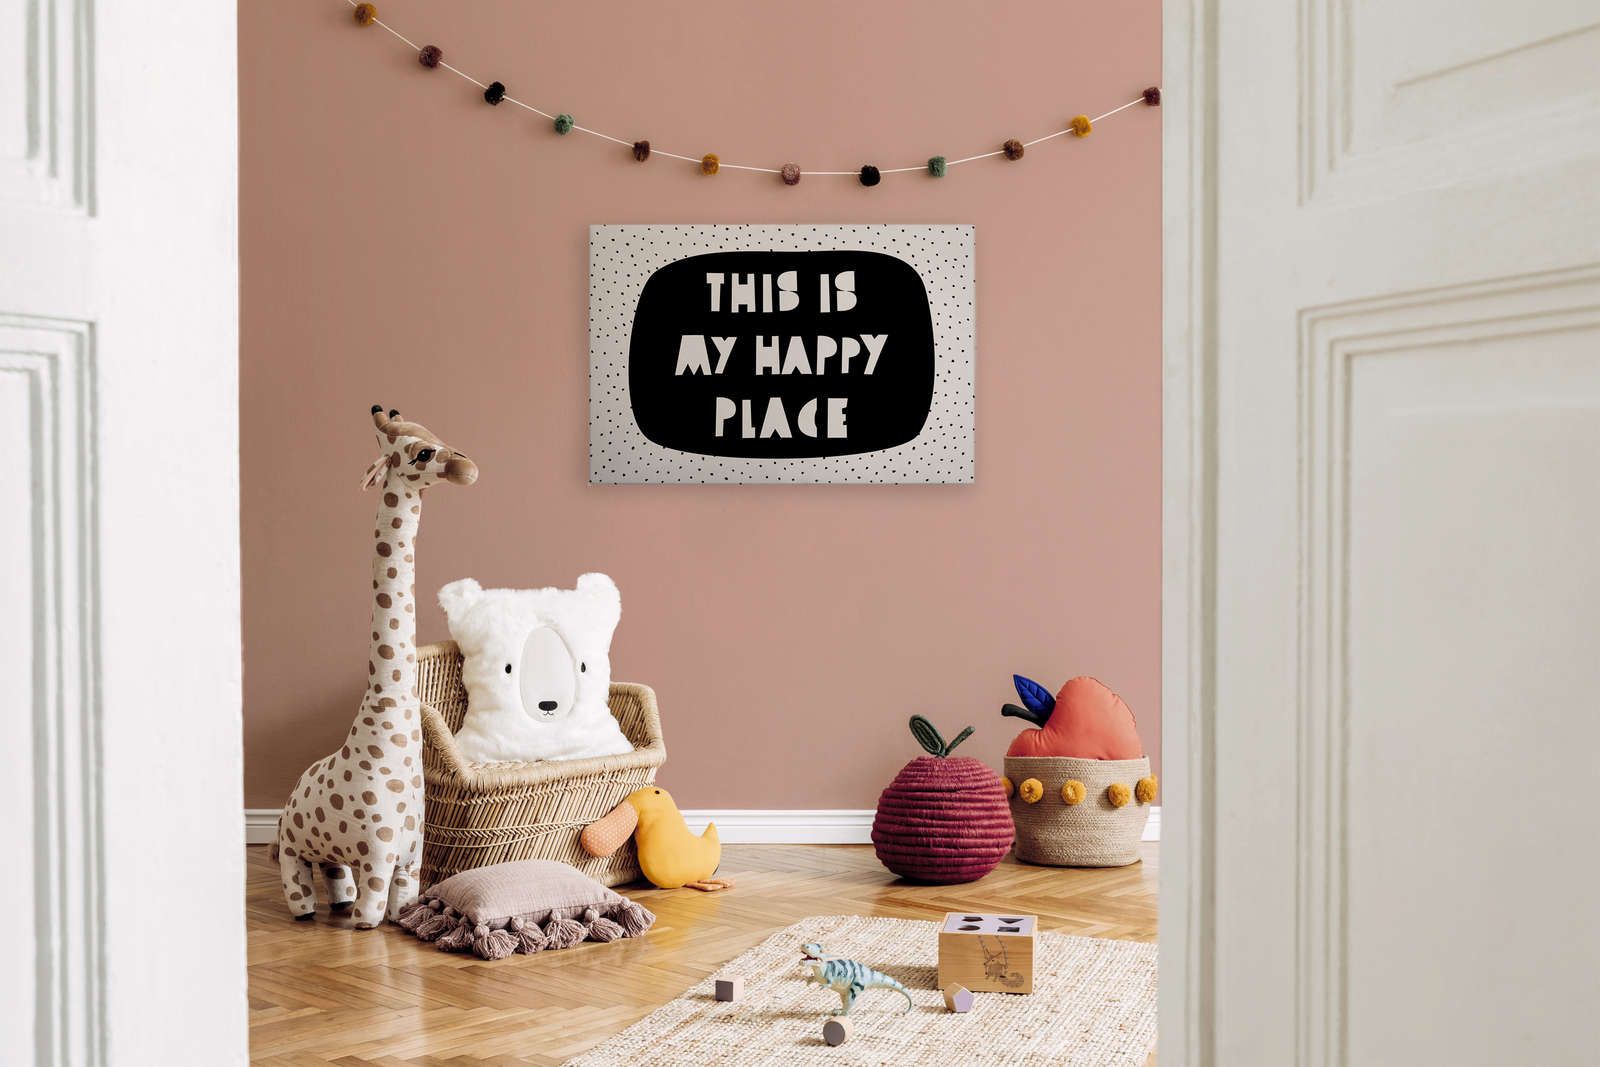             Lienzo para habitación infantil con inscripción "This is my happy place" - 90 cm x 60 cm
        